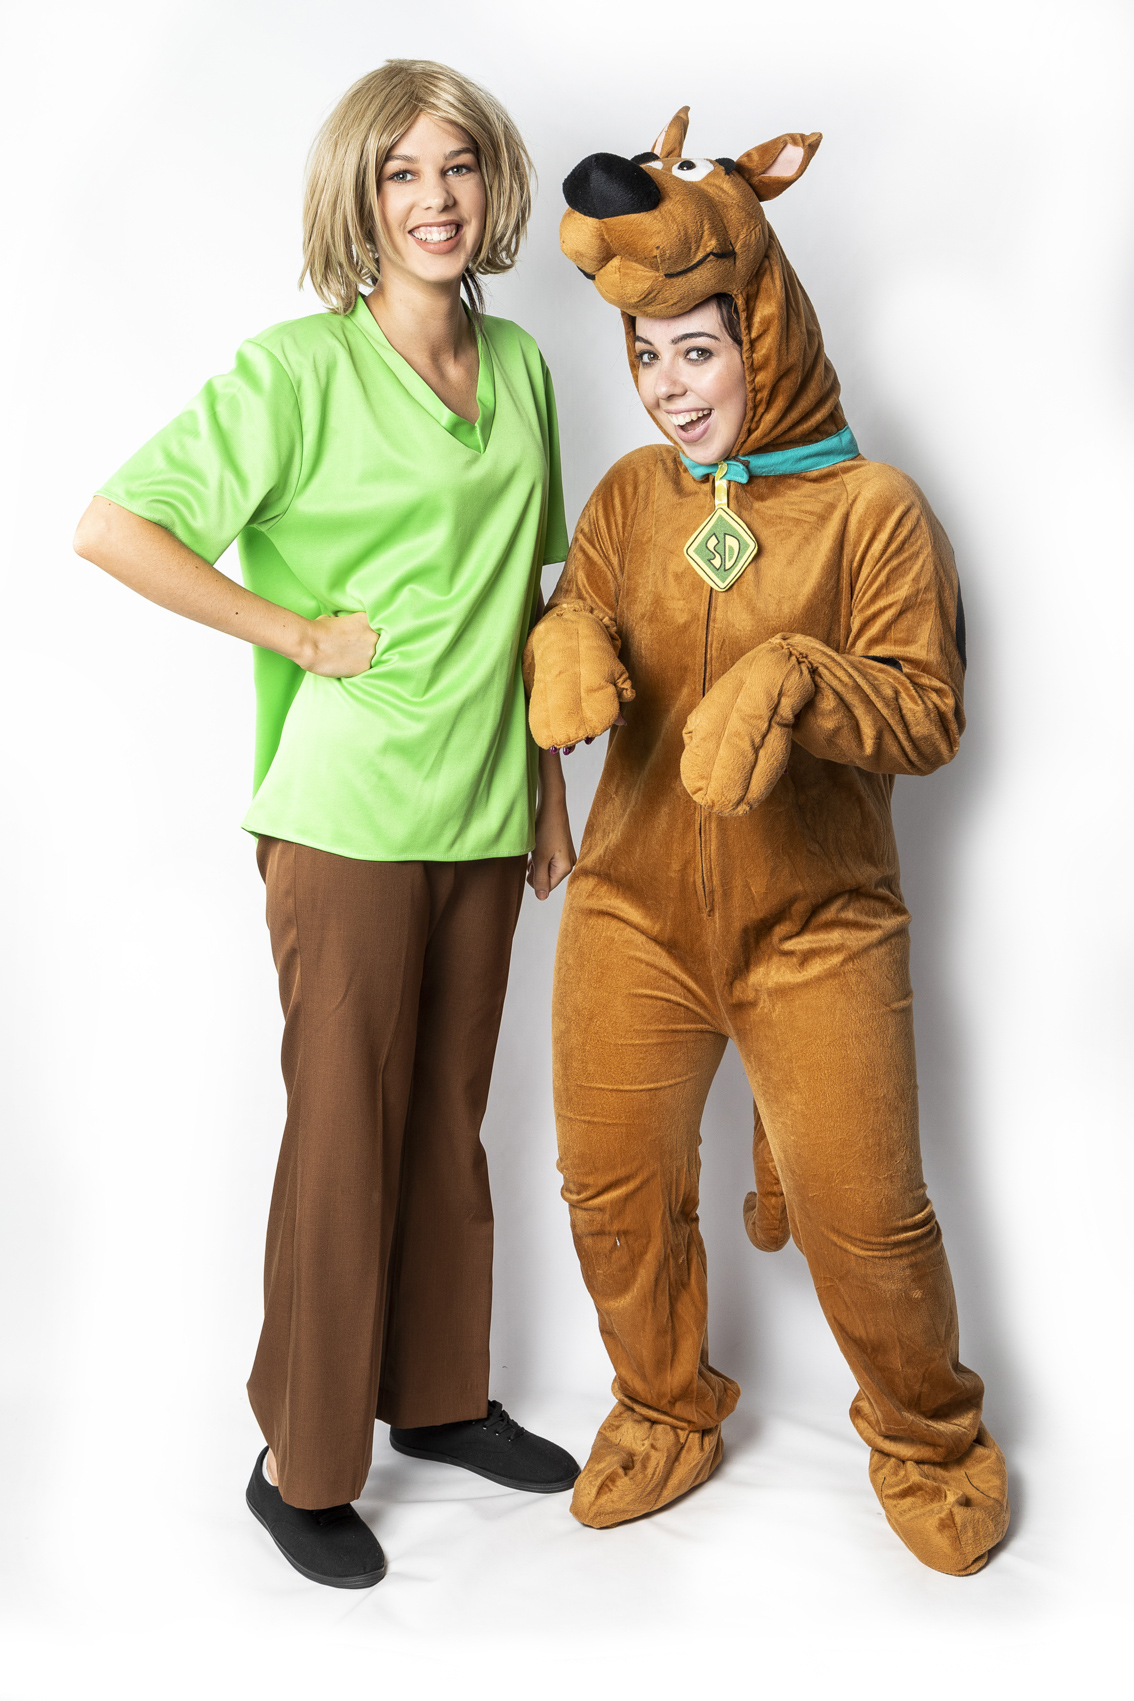 Doo – ABC Costume Hire